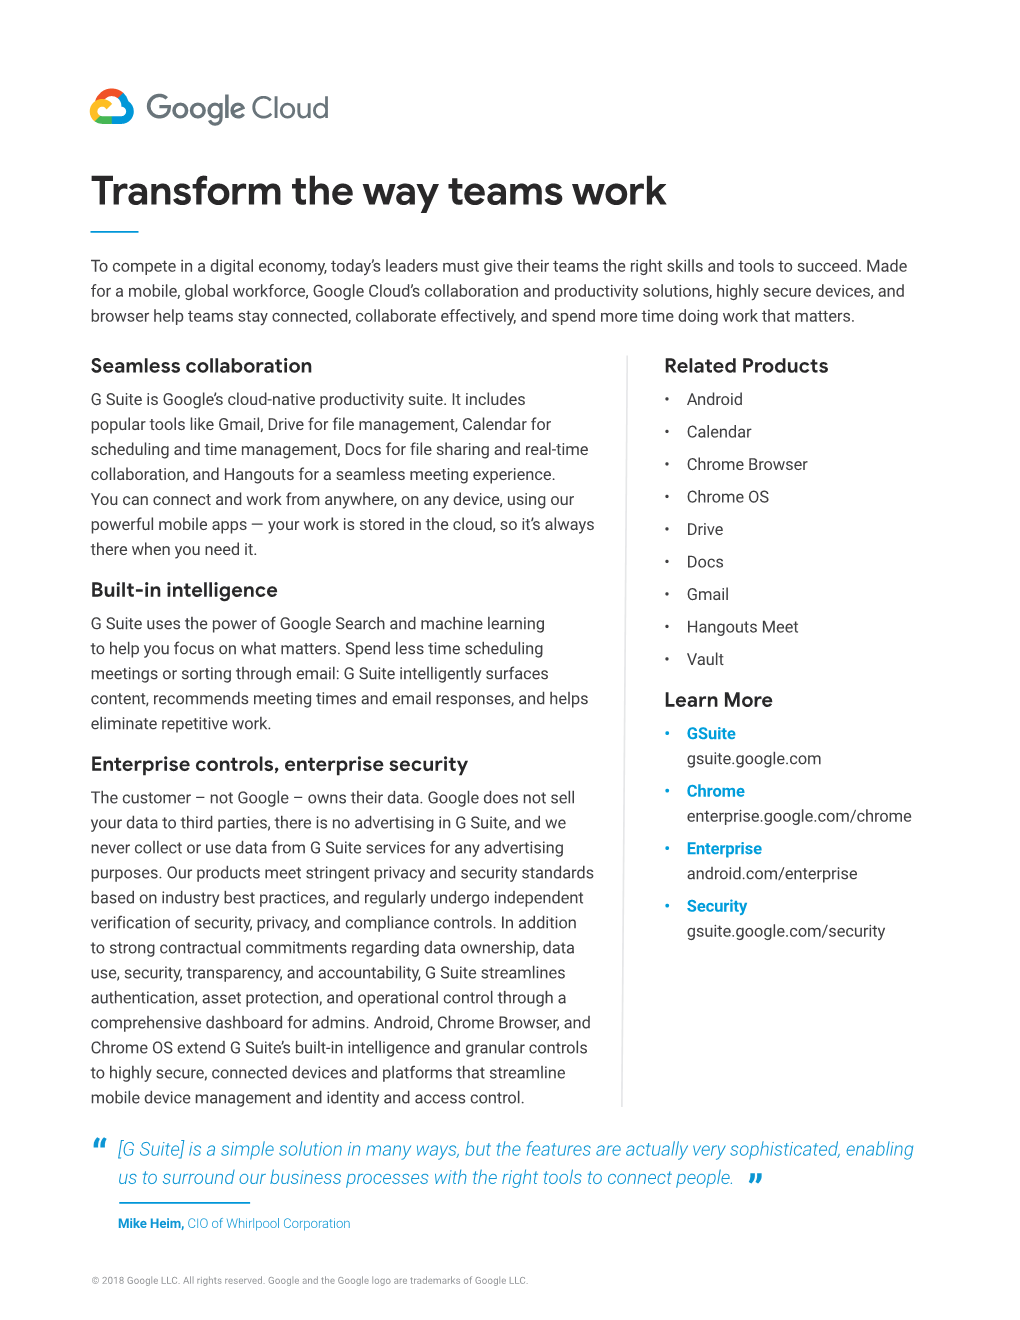 “ Transform the Way Teams Work ”